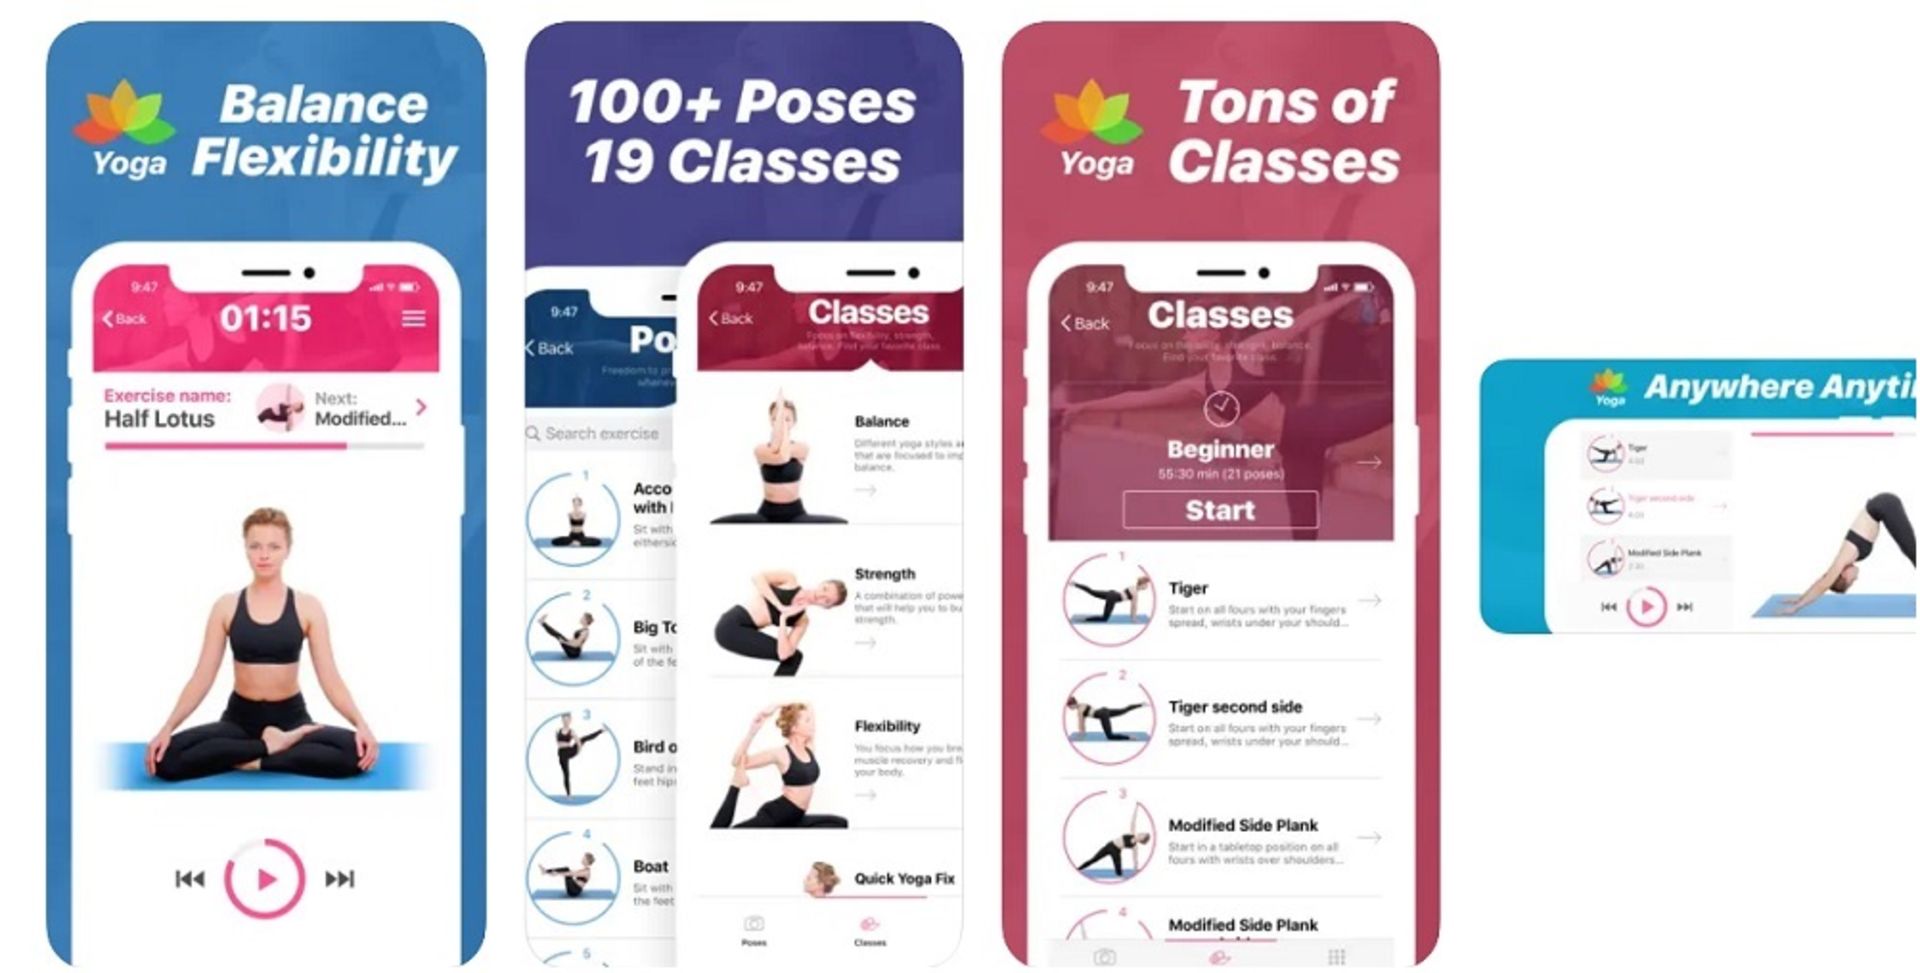 اپلیکیشن yoga poses classes at home برای تمرین در منزل